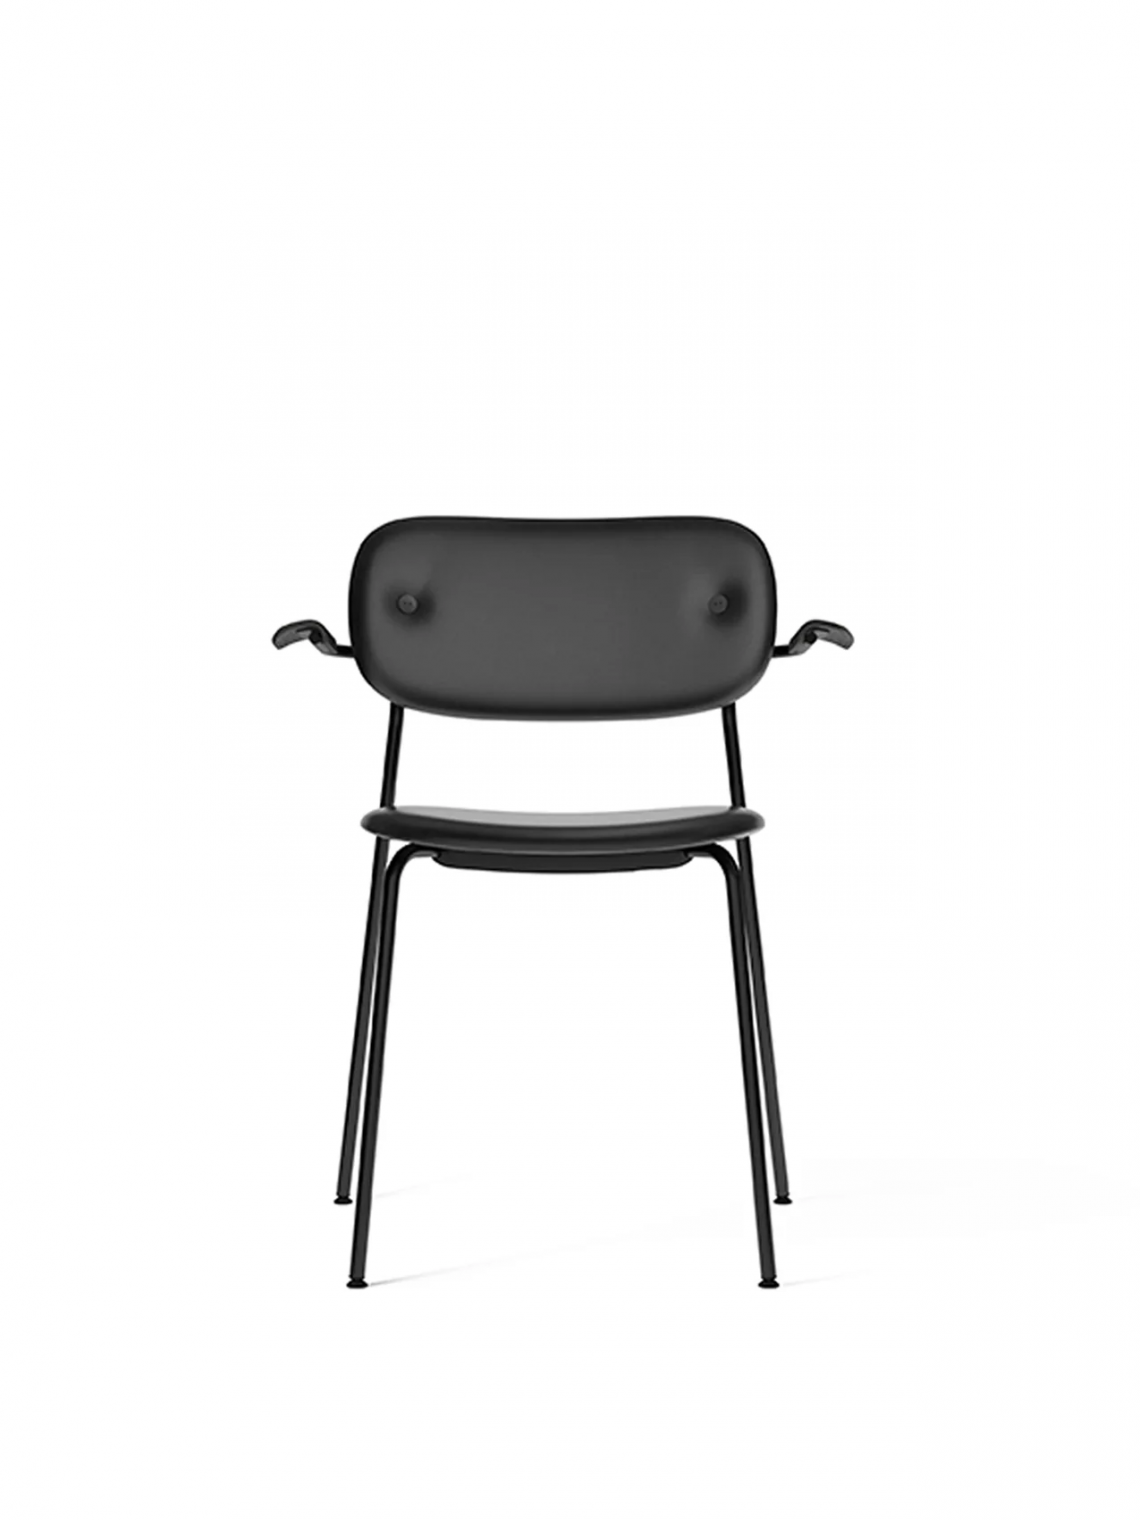 Co with armrest, Black, Veneer餐椅细节图6